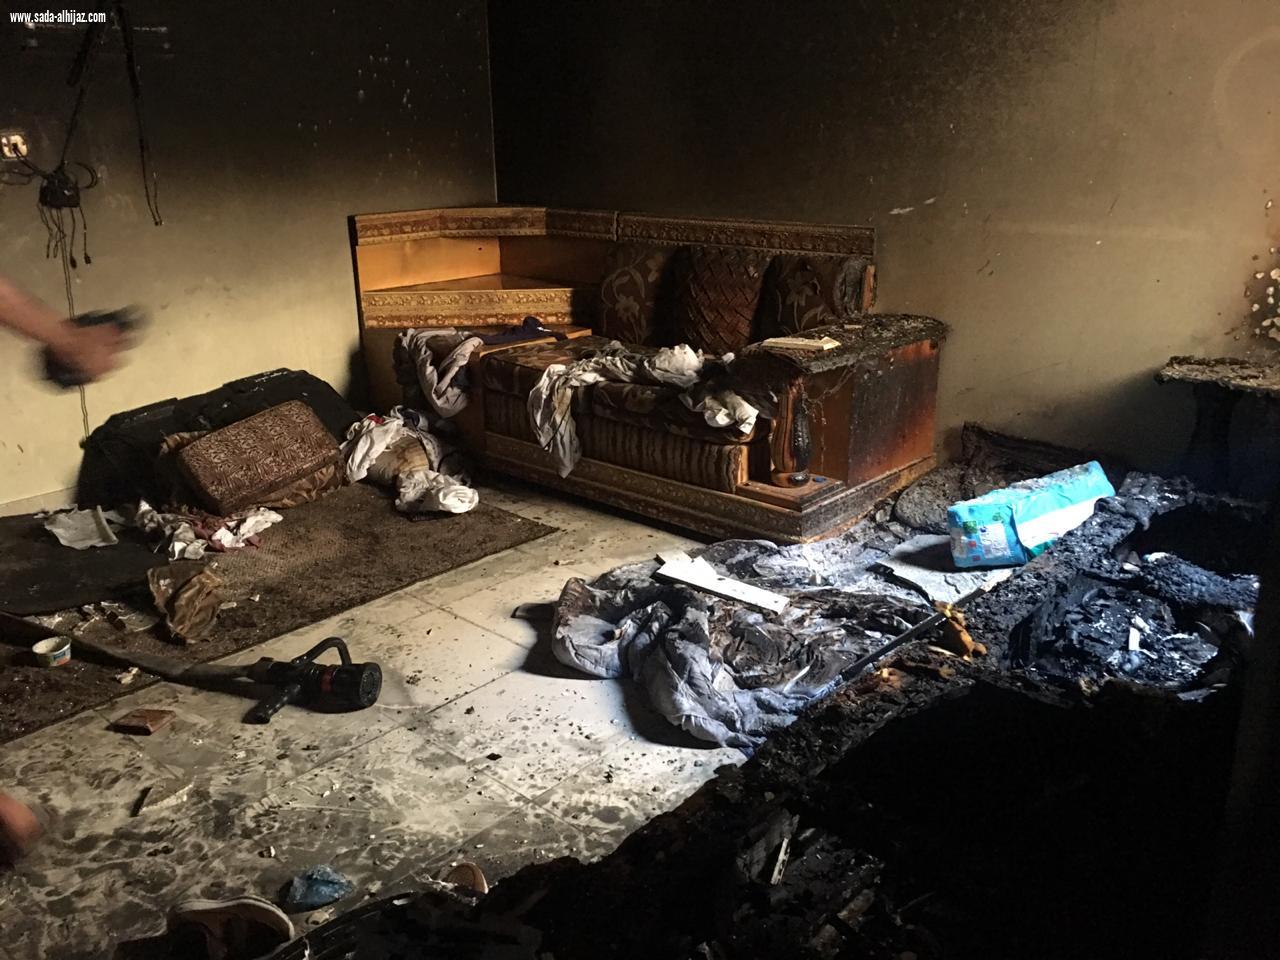 مدني ينبع ينقذ 3 أطفال وامرأة من حريق شب في عمارة سكنية في حي الجابرية